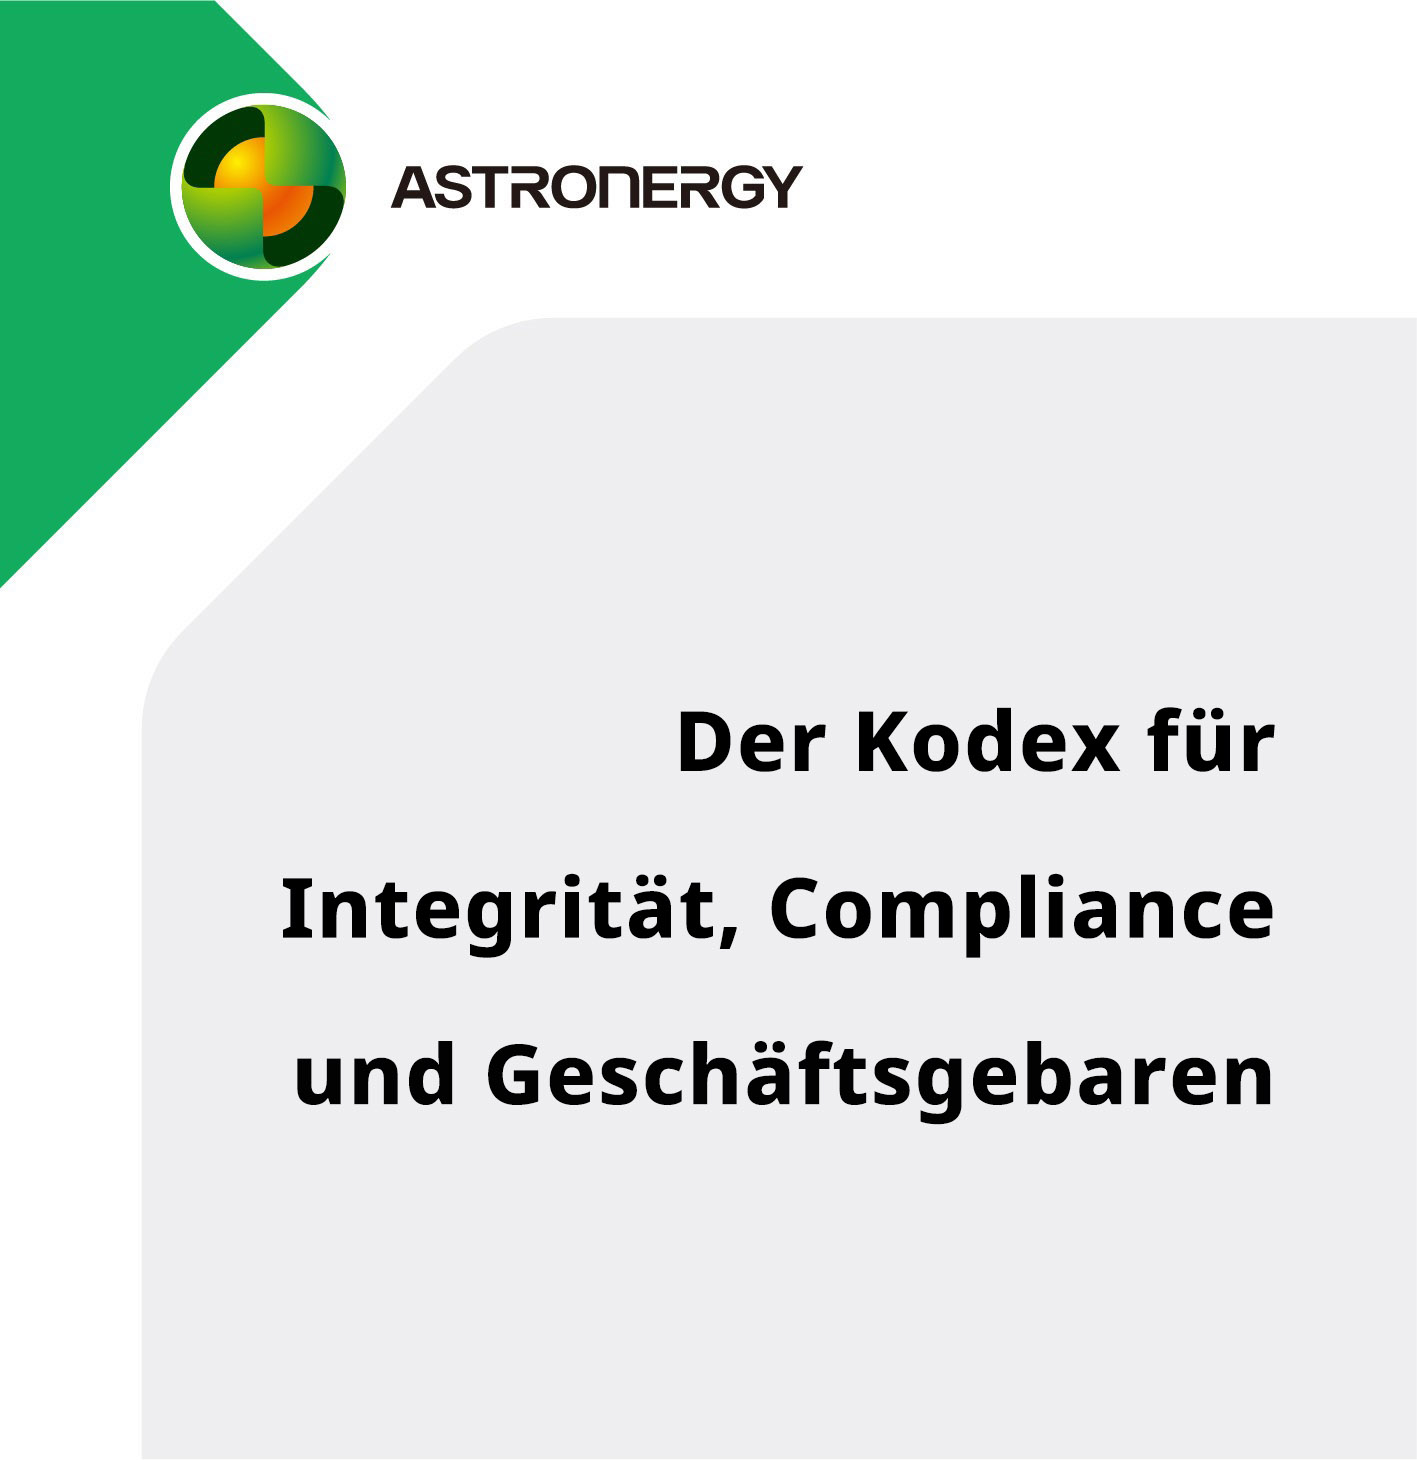 Der Kodex für Integrität, Compliance und Geschäftsgebaren